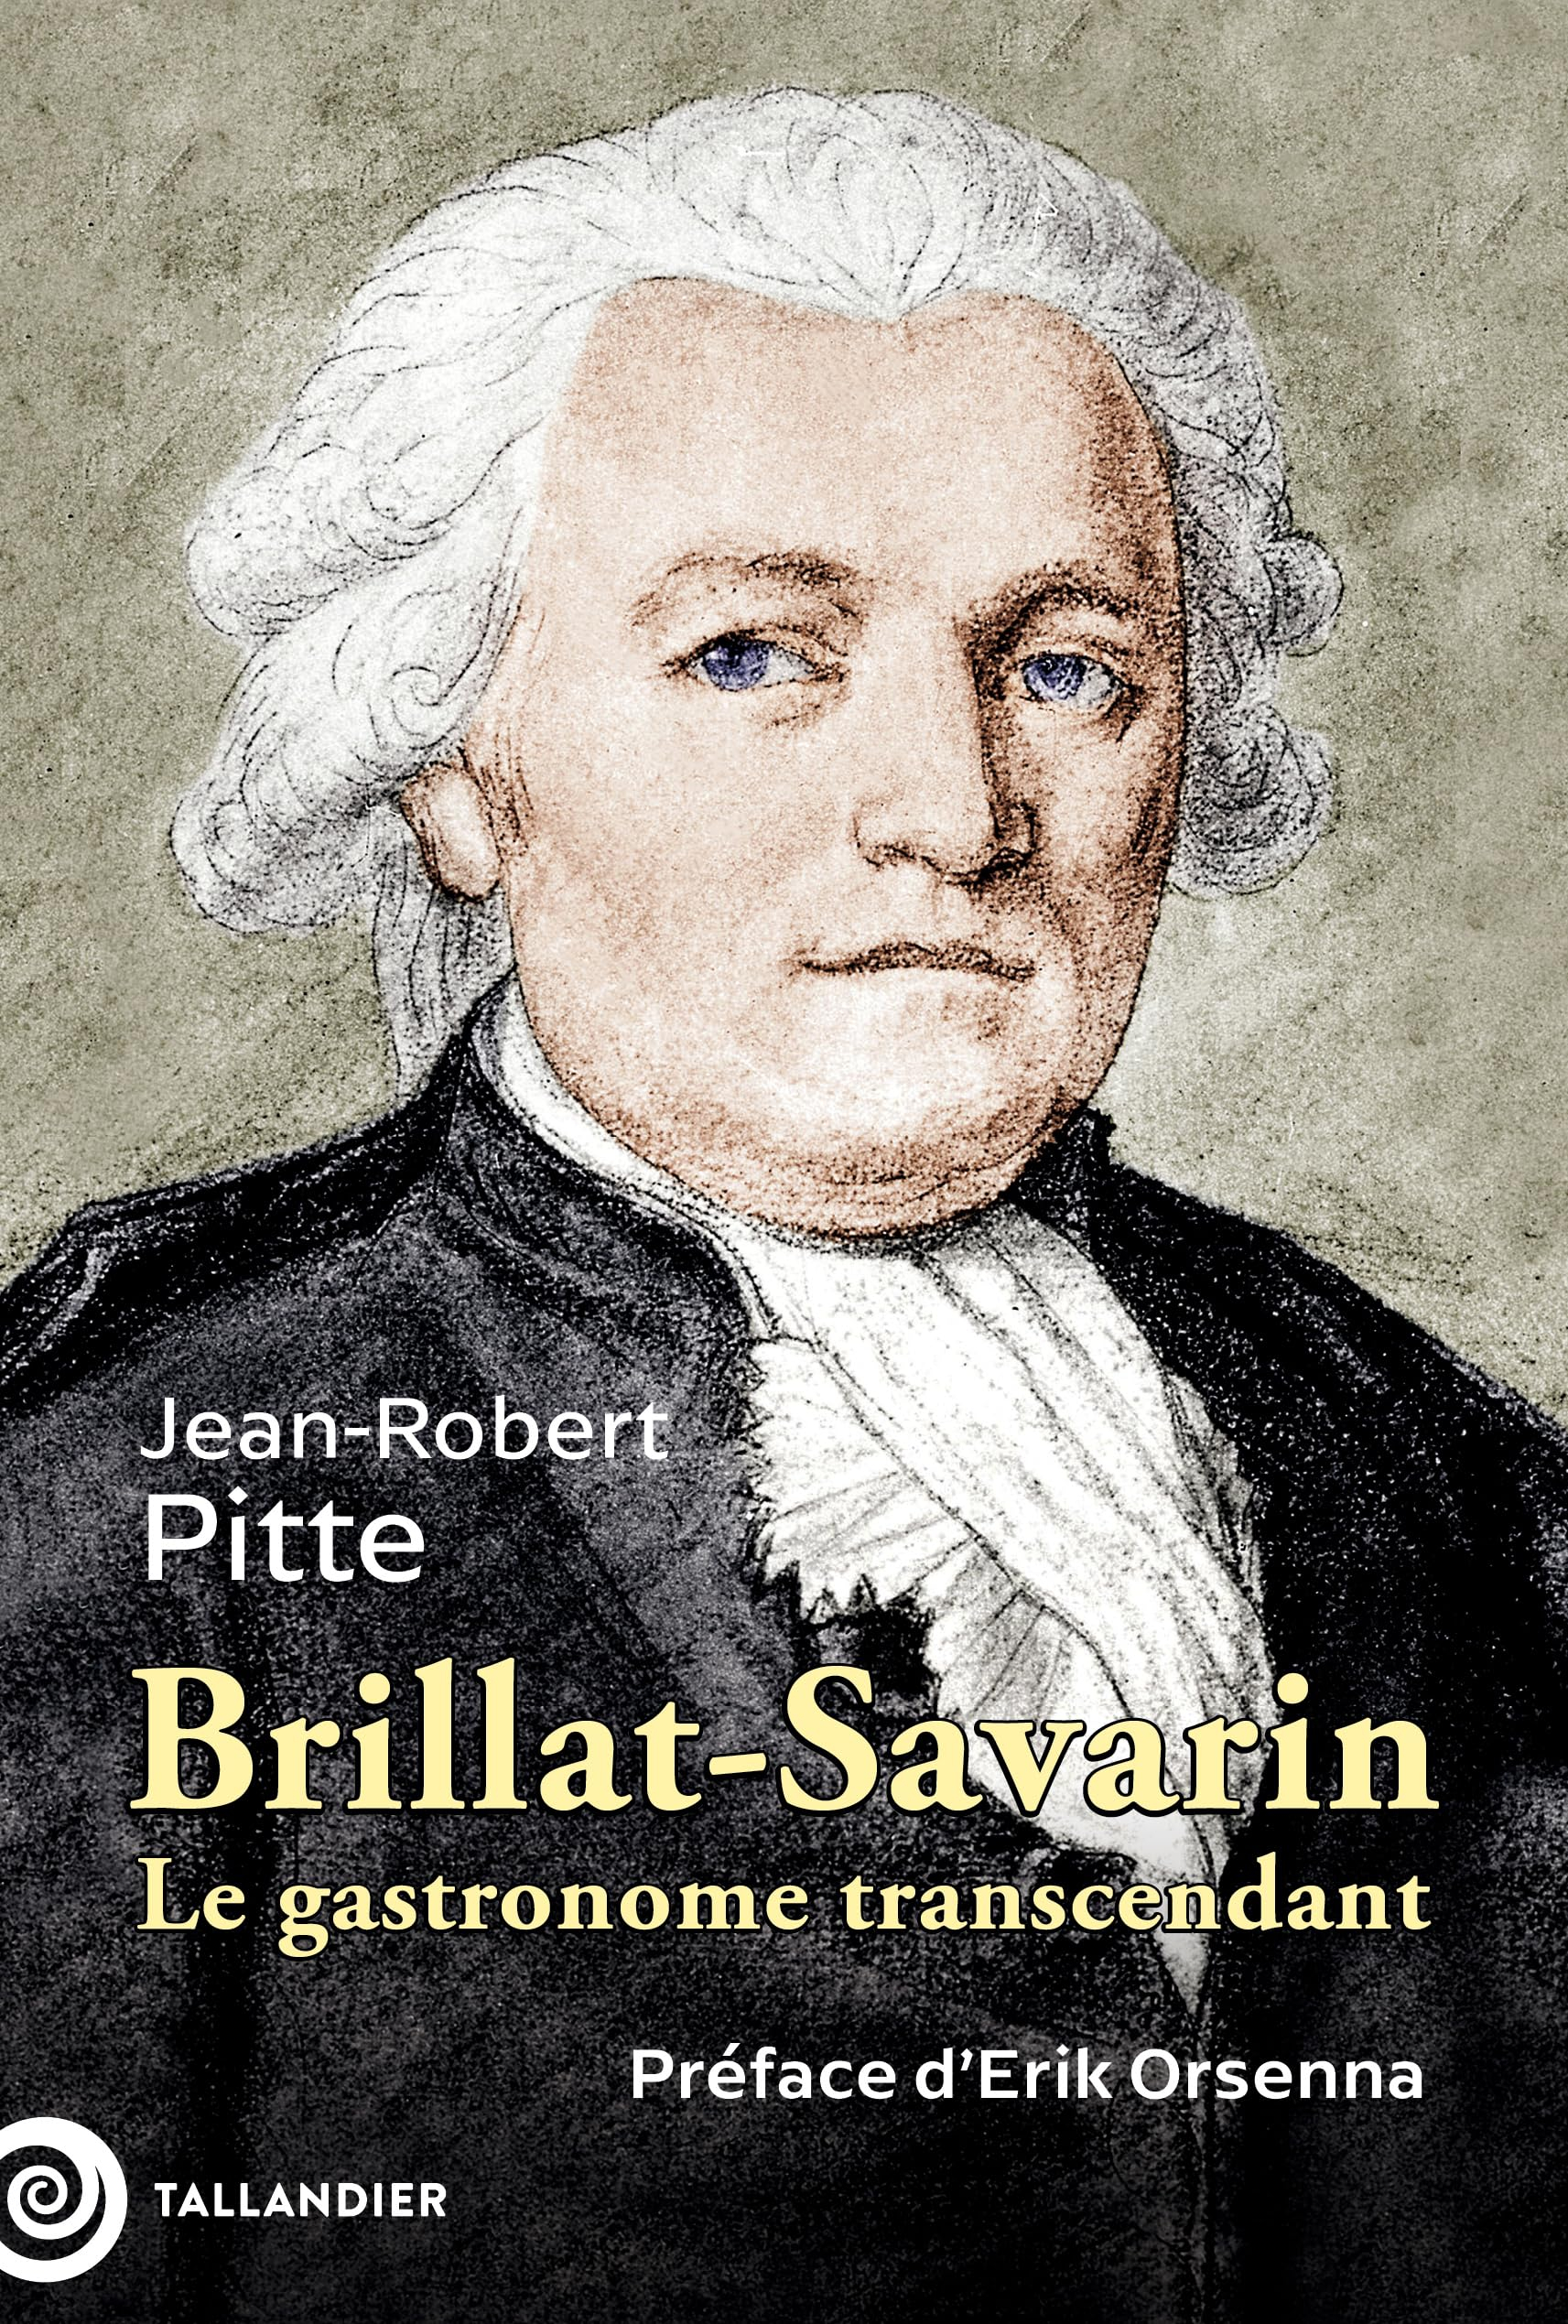 Brillat-Savarin, 1755-1826 : le gastronome transcendant